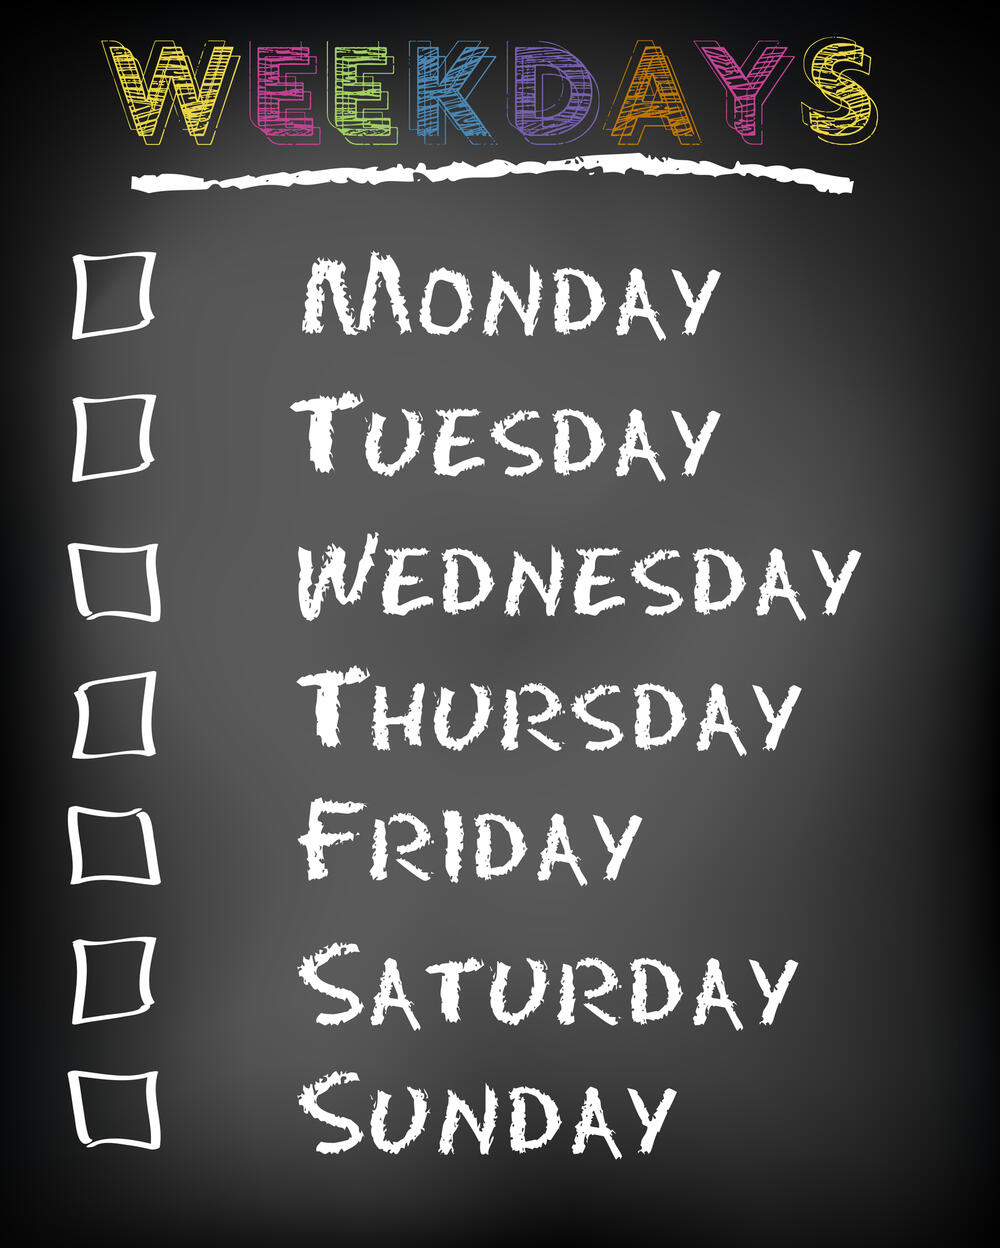 Ponedeljak, utorak, sreda... Koji je vaš dan u nedelji?